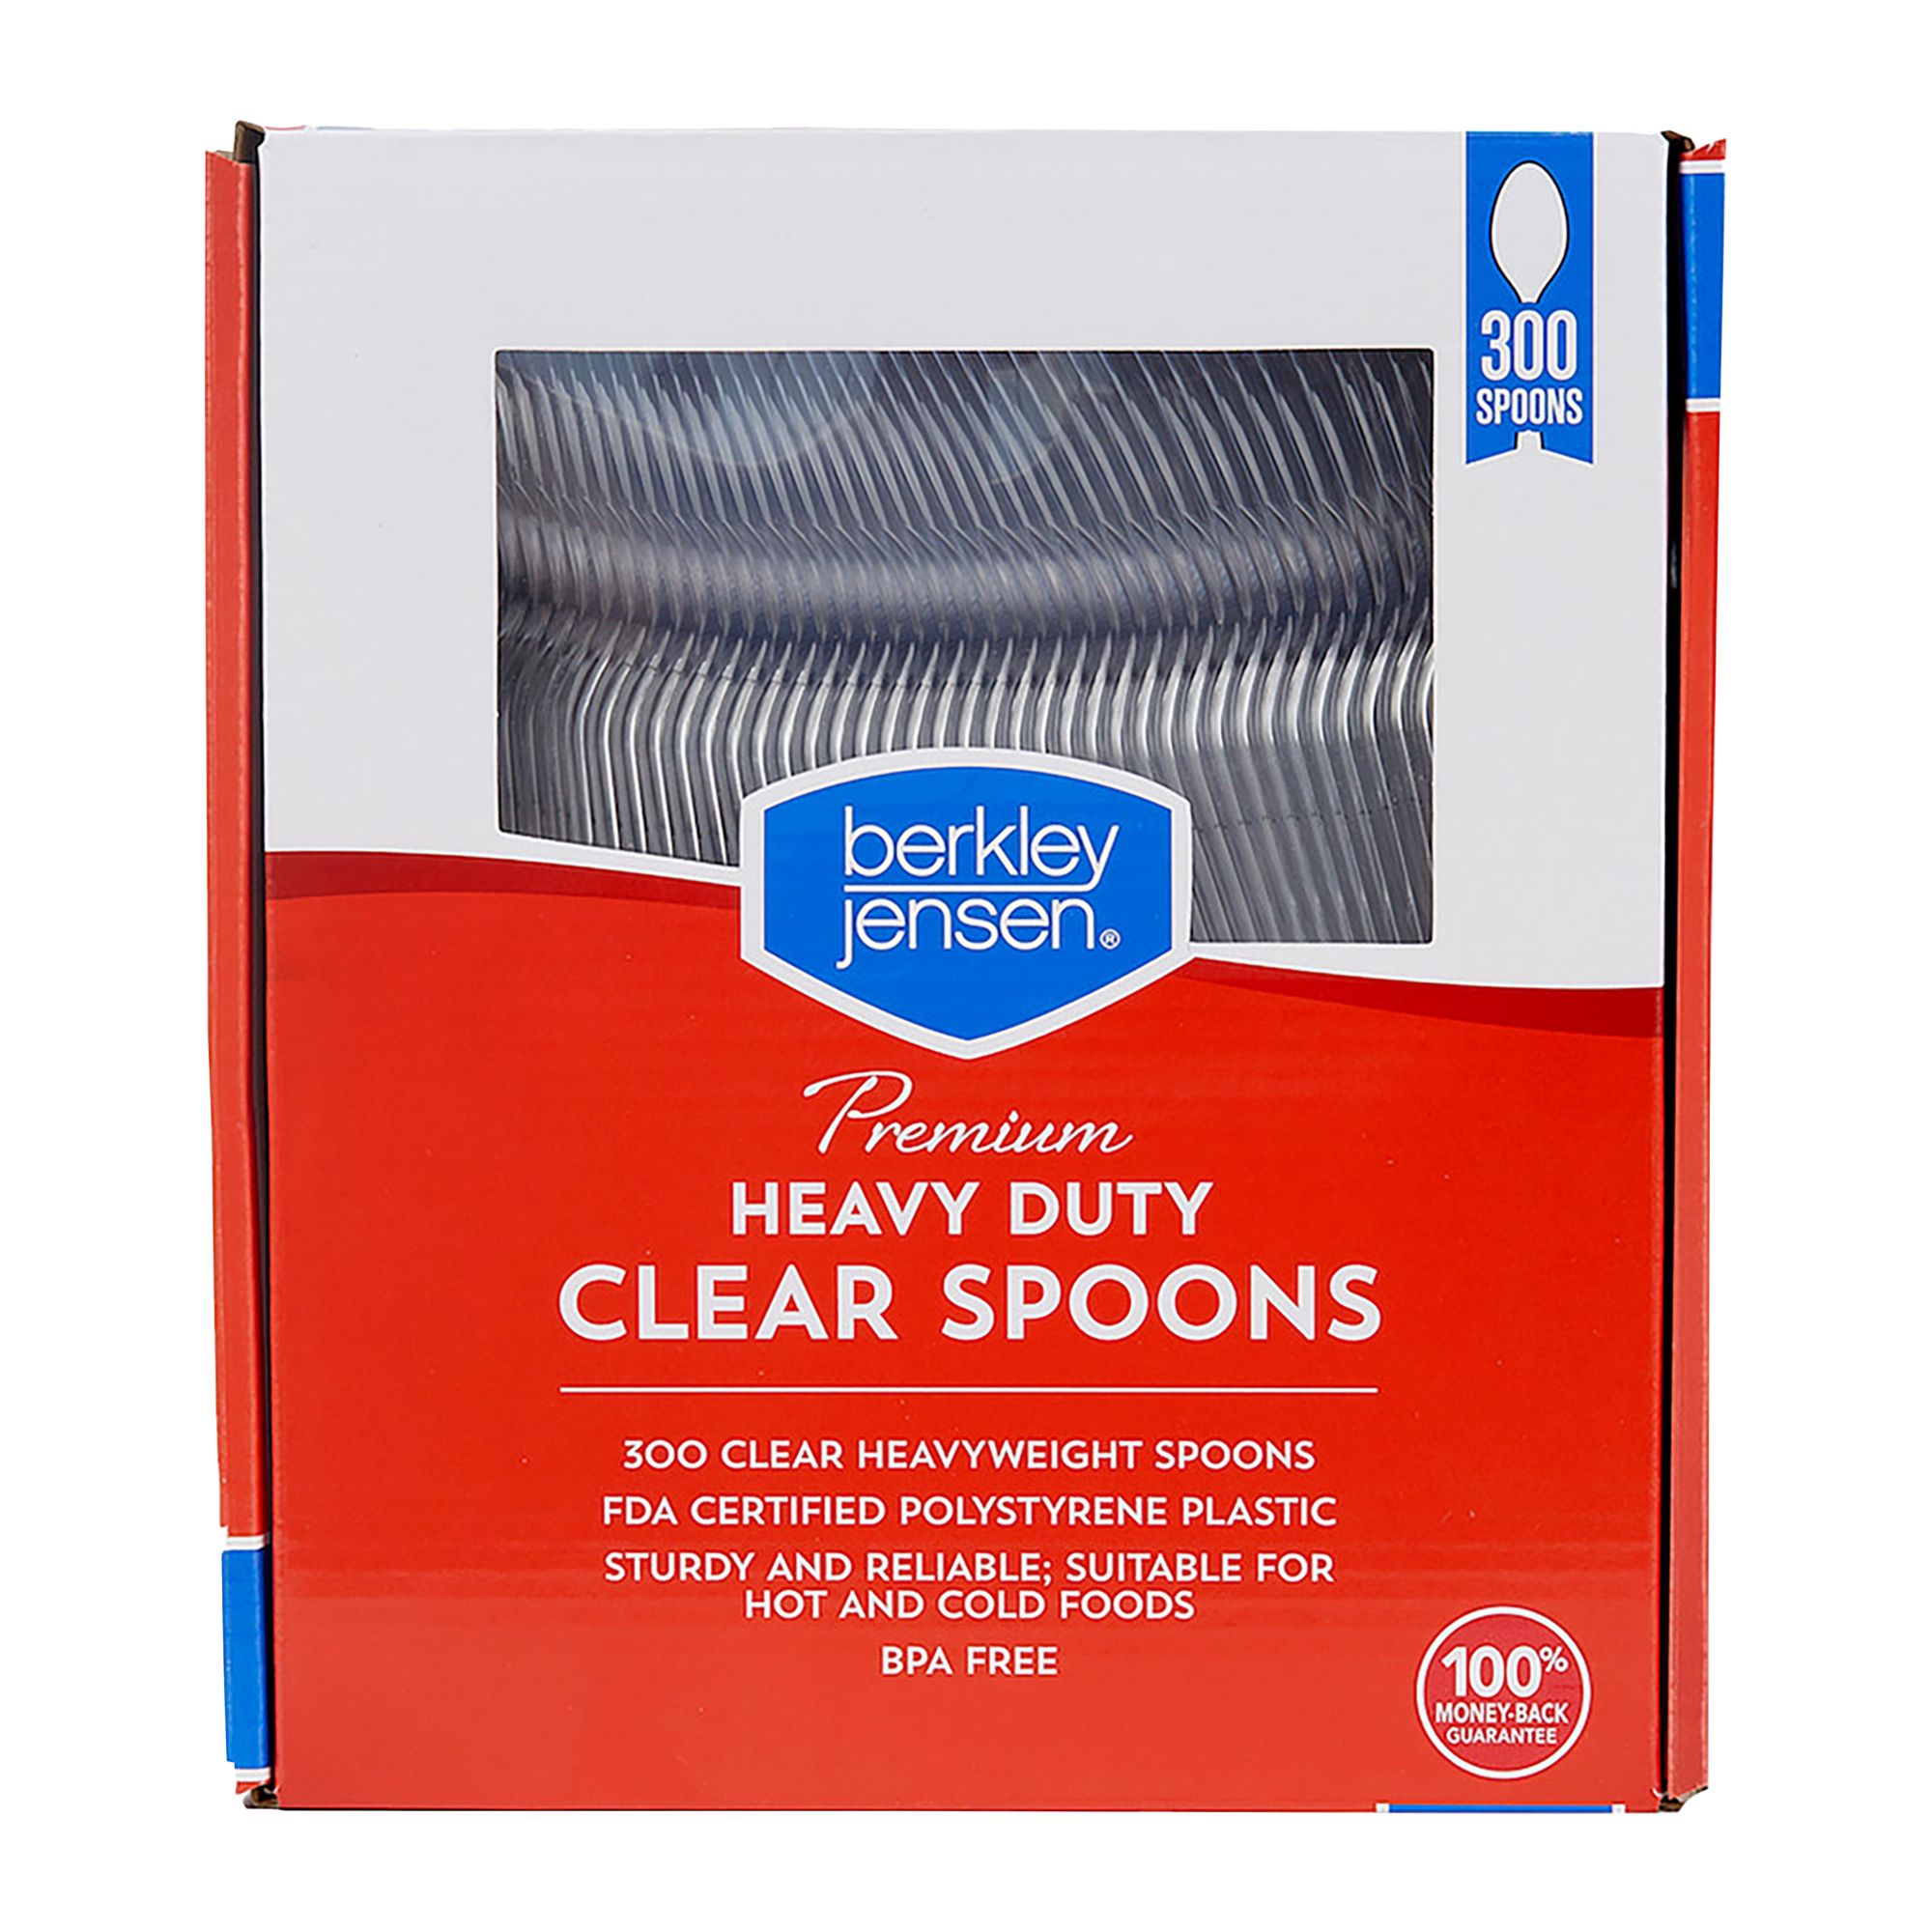 Berkley Jensen Plastic Spoons, 300 ct. - Clear